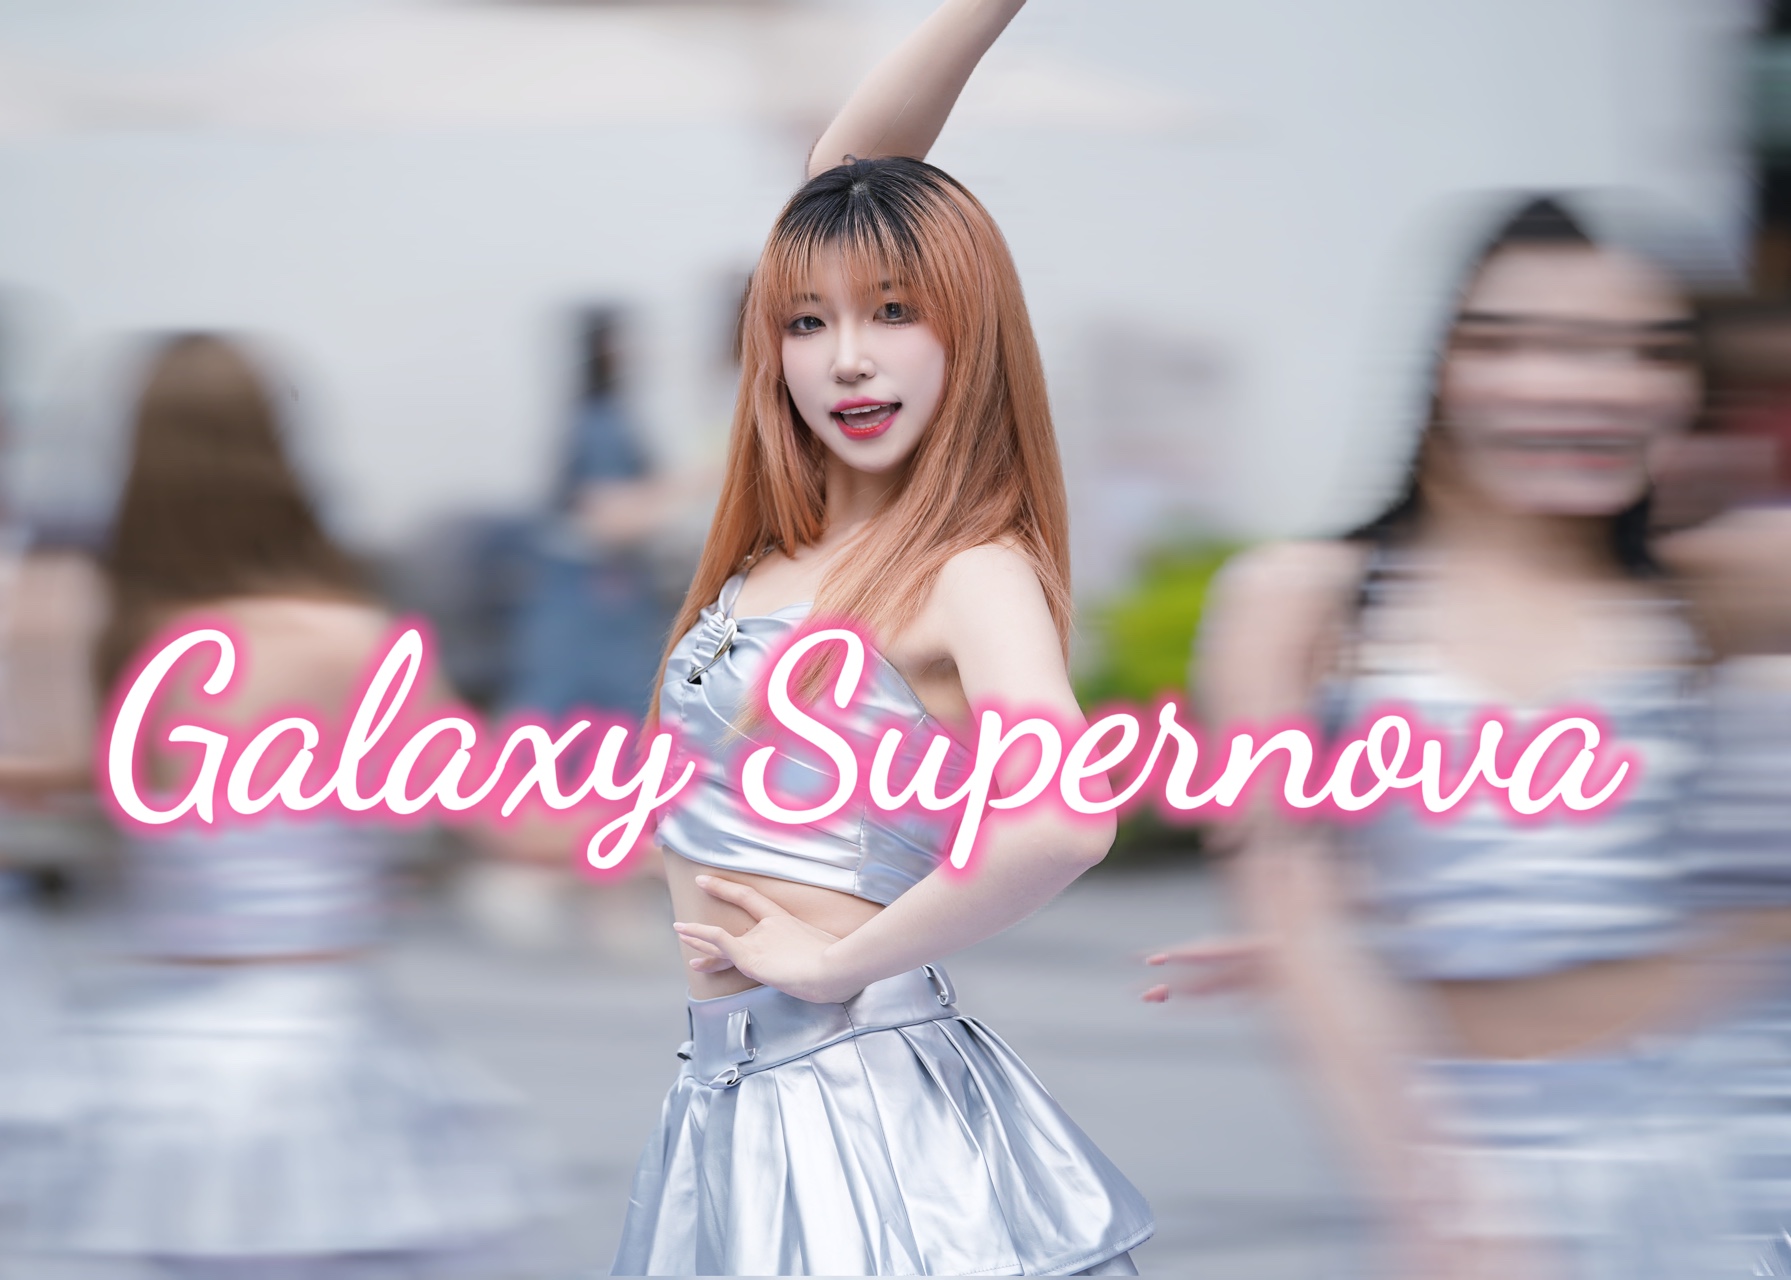 银河超新星!少女时代galaxy supernova金发西卡位路演直拍